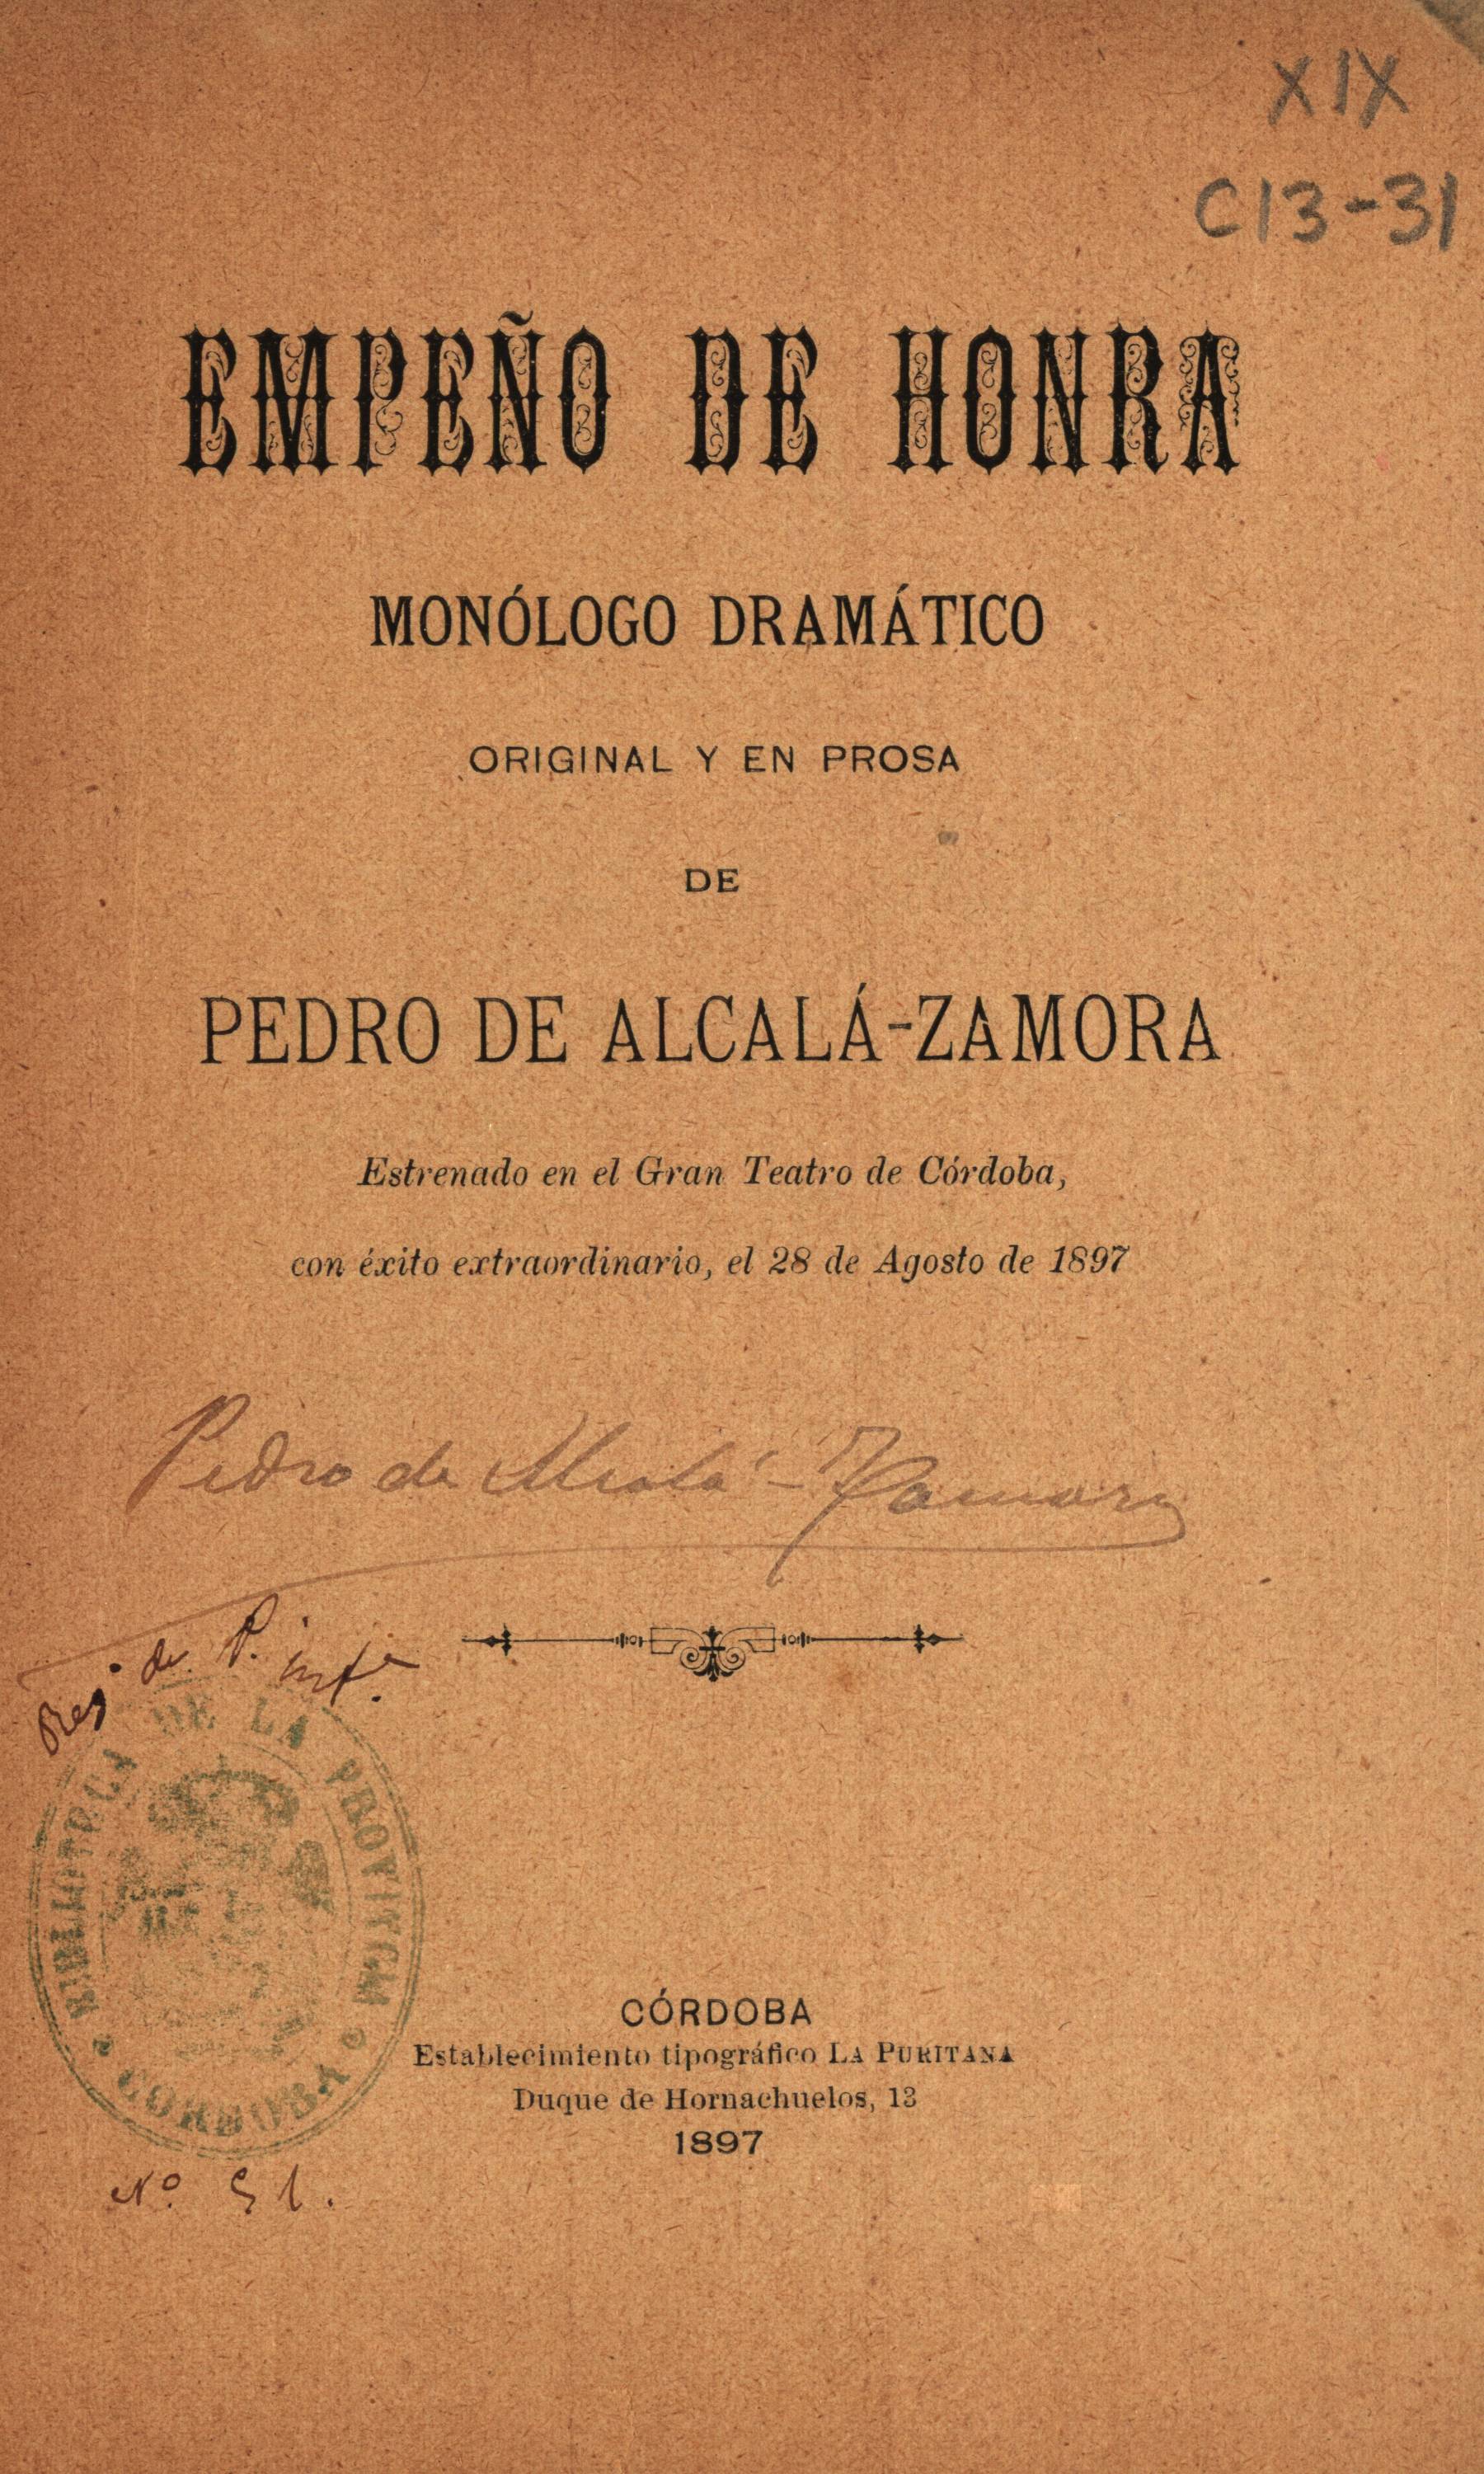 Empeño de honra. Monólogo drámatico original y en prosa de Pedro de Alcalá-Zamora